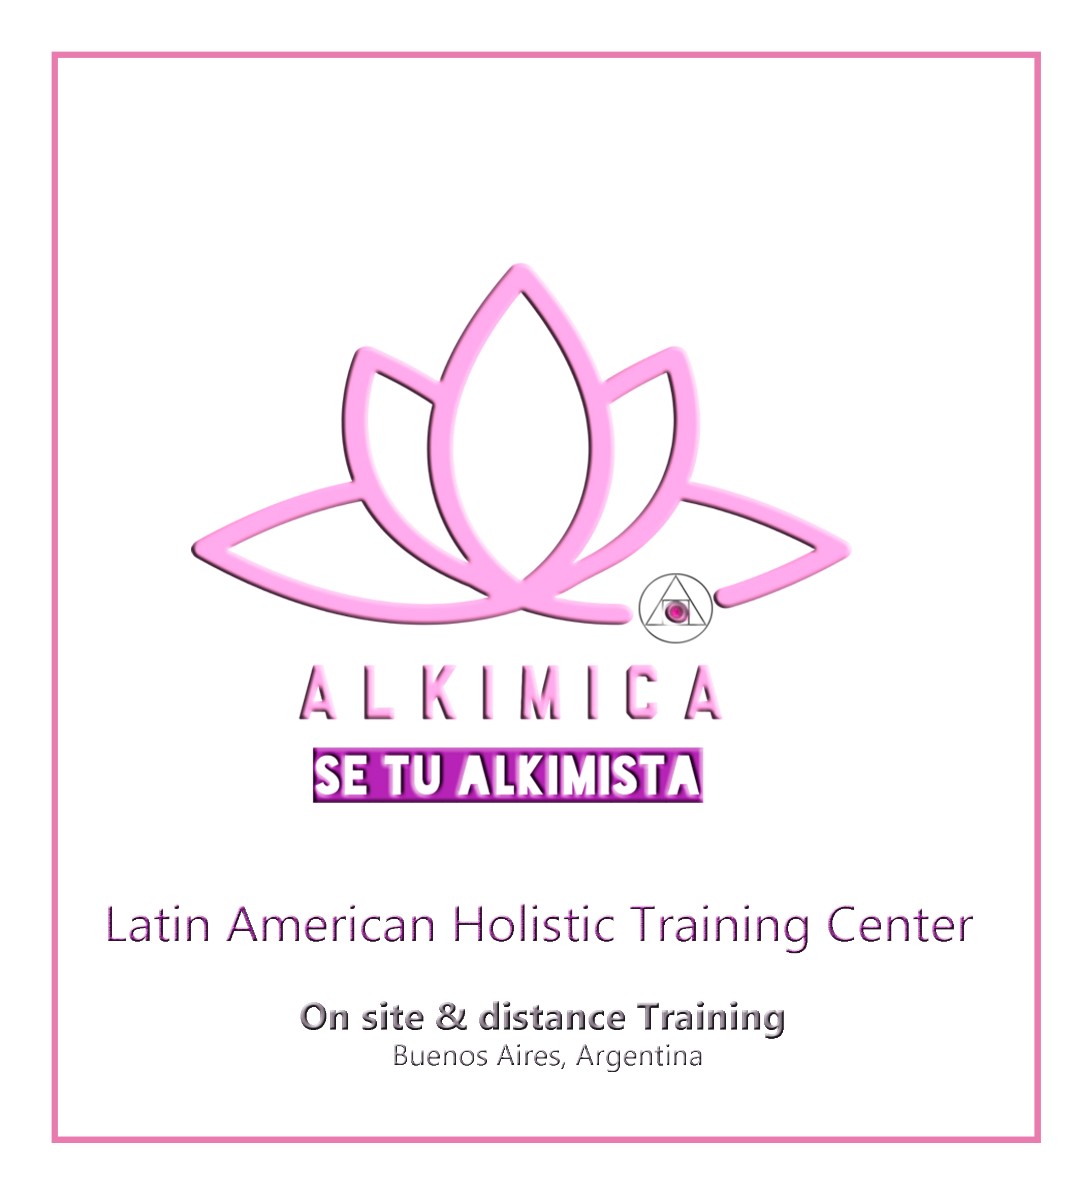 ALKIMICA - Capacitación Holística logo